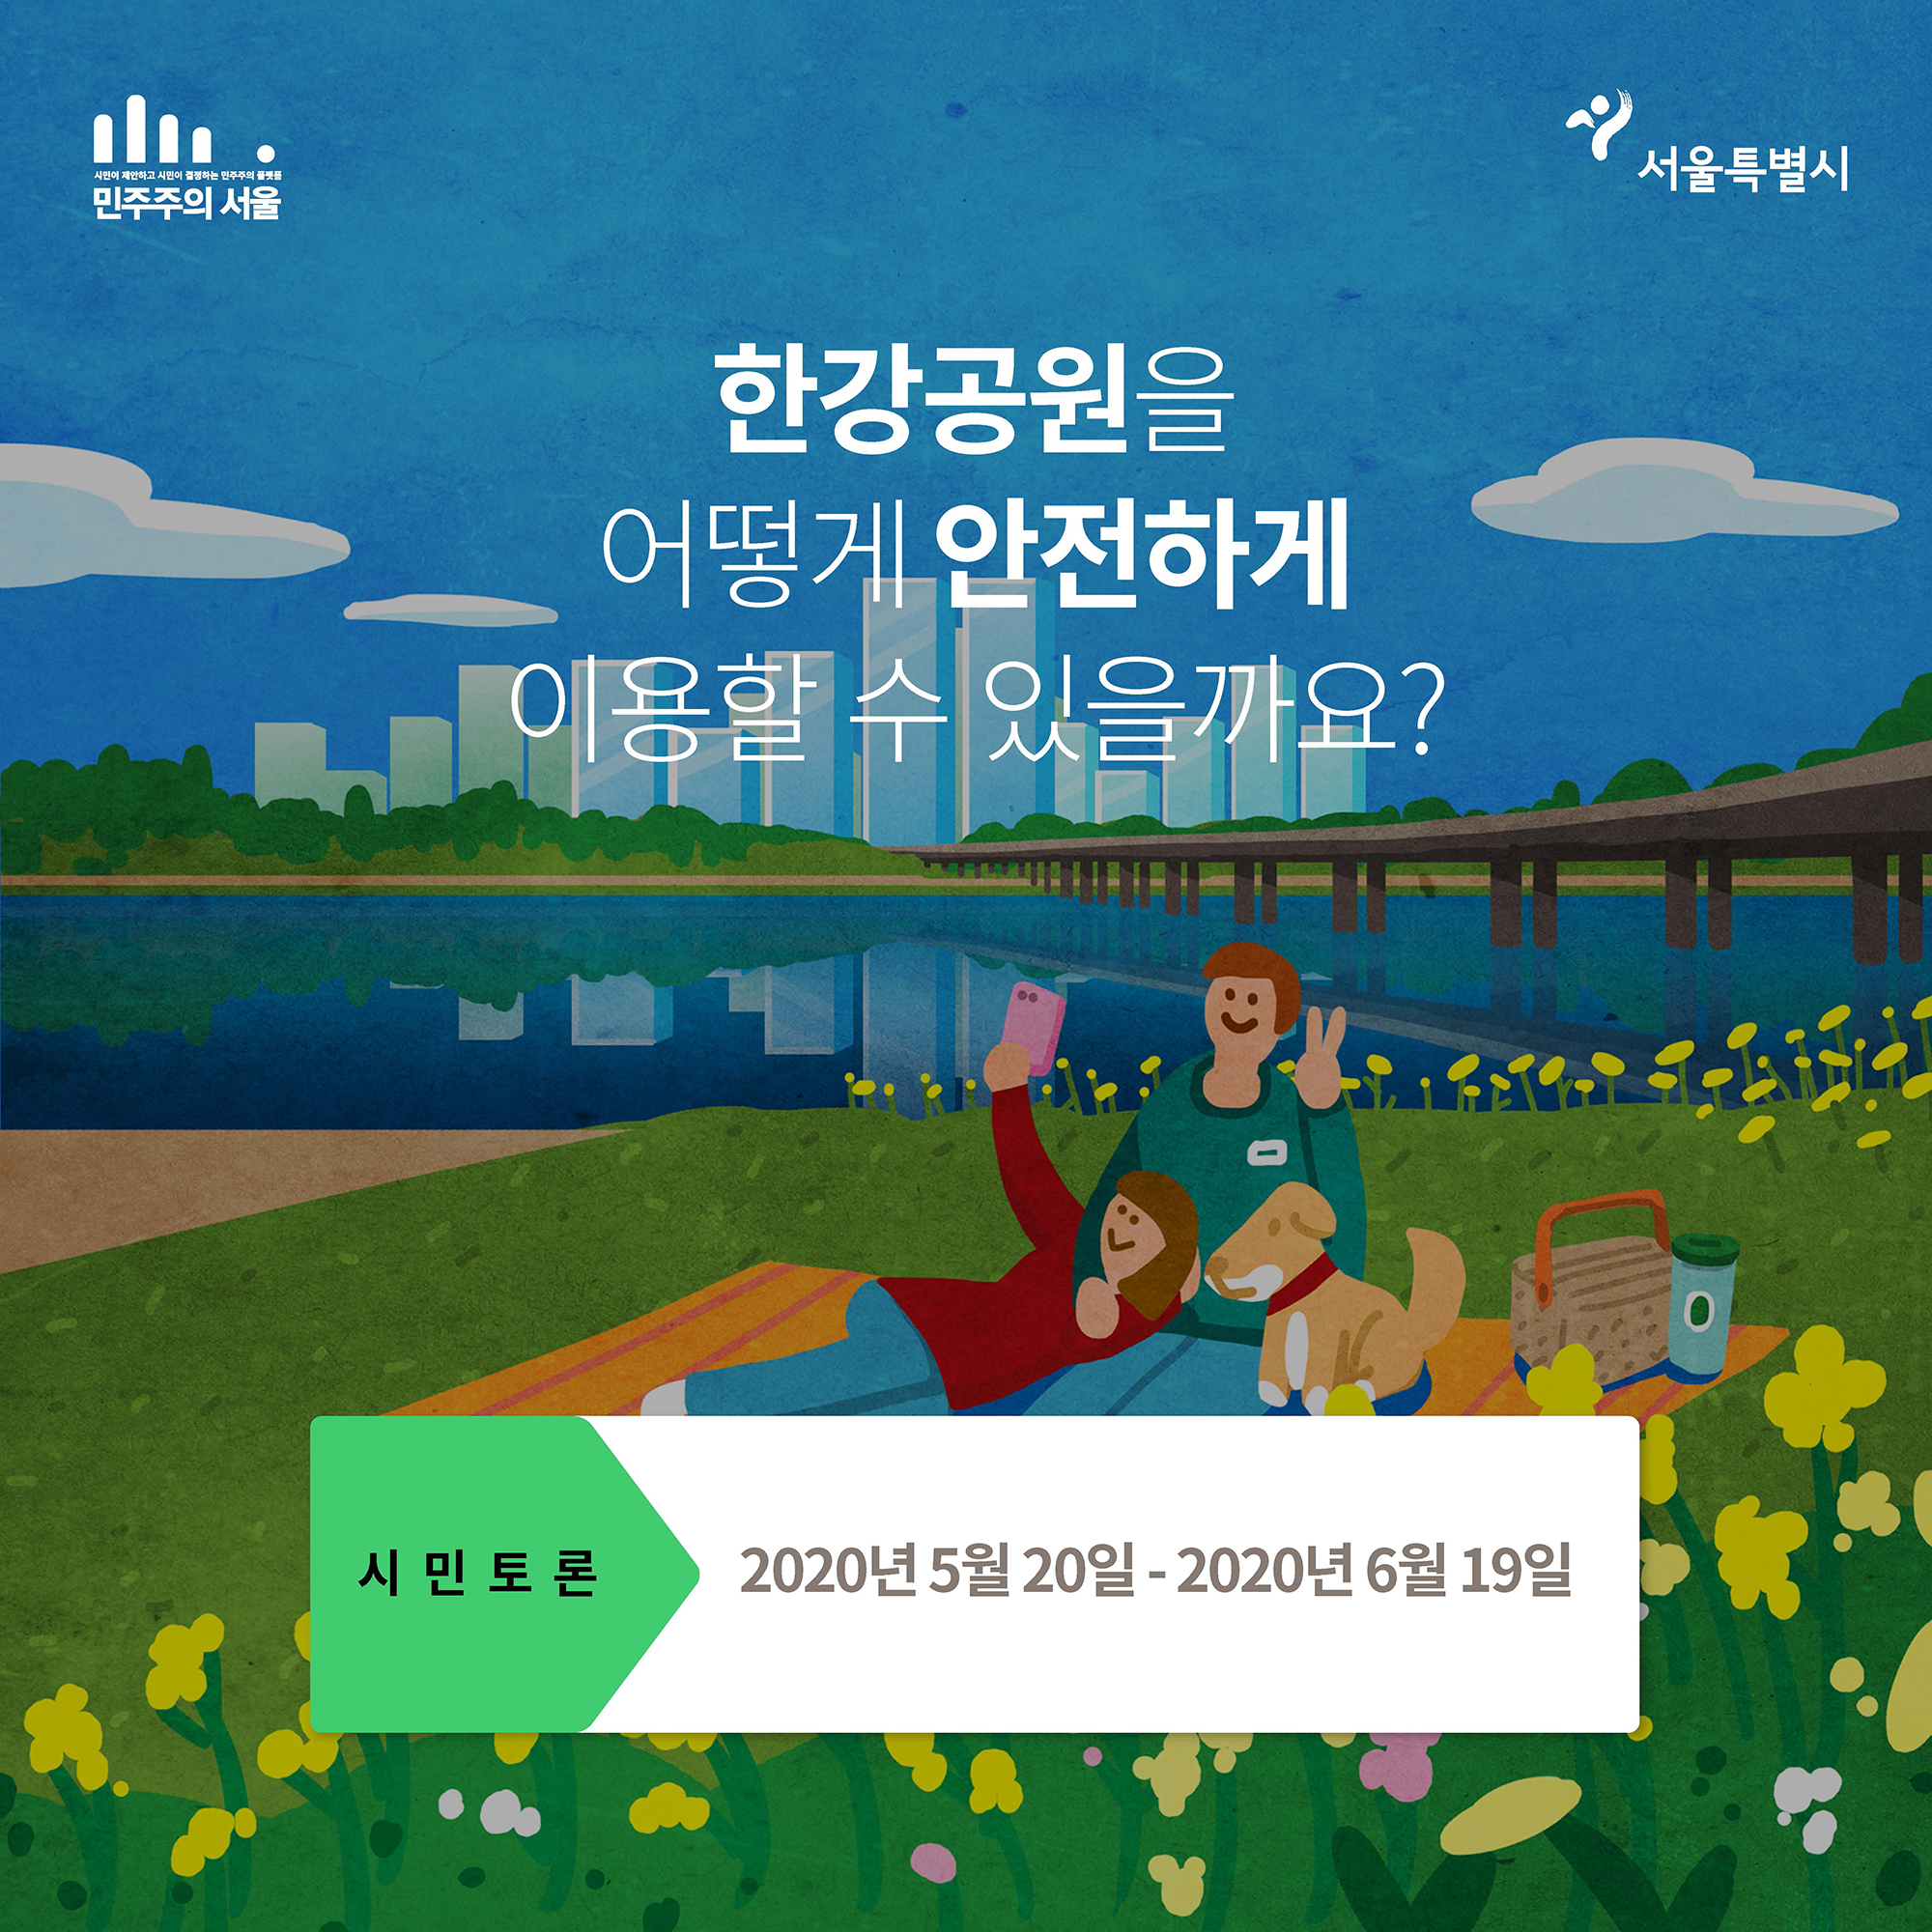 한강공원을 어떻게 안전하게 이용할 수 있을까요?
시민토론 서울시가 답합니다.
2020년 5월 20일부터 2020년 6월 19일까지